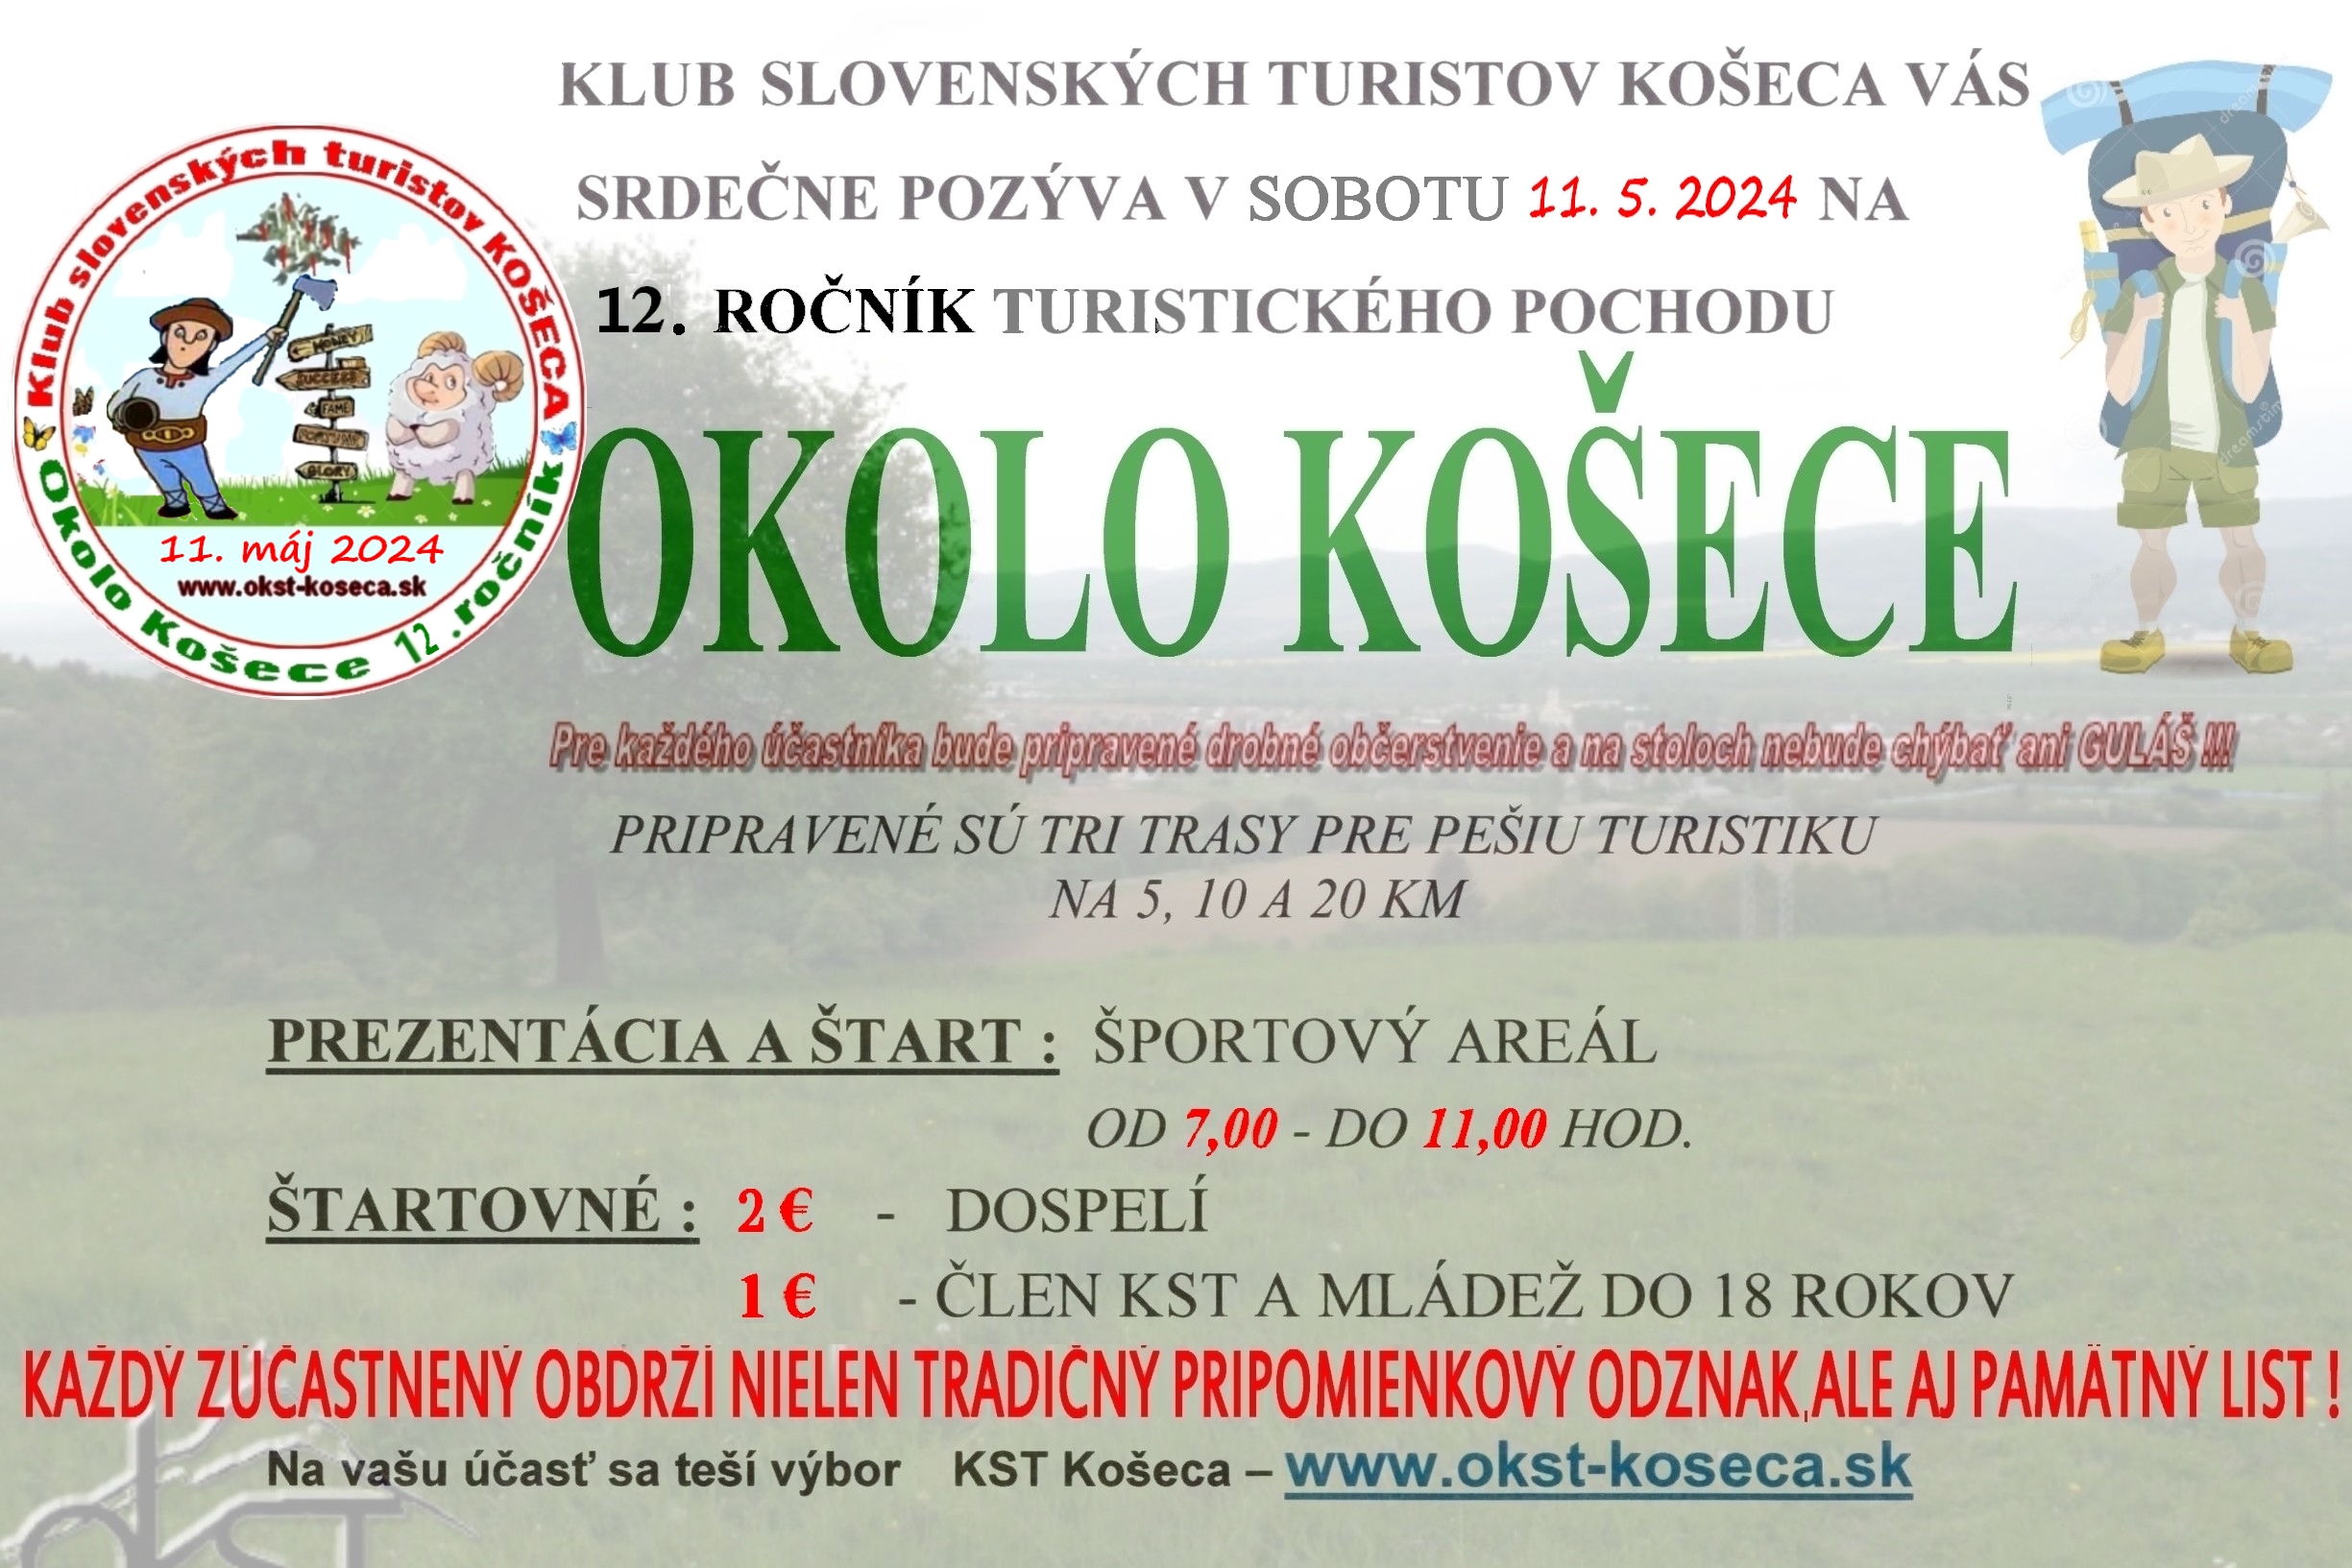 Pozvánka na 12. ročník turistického pochodu okolo Košece dňa 11.5.2024